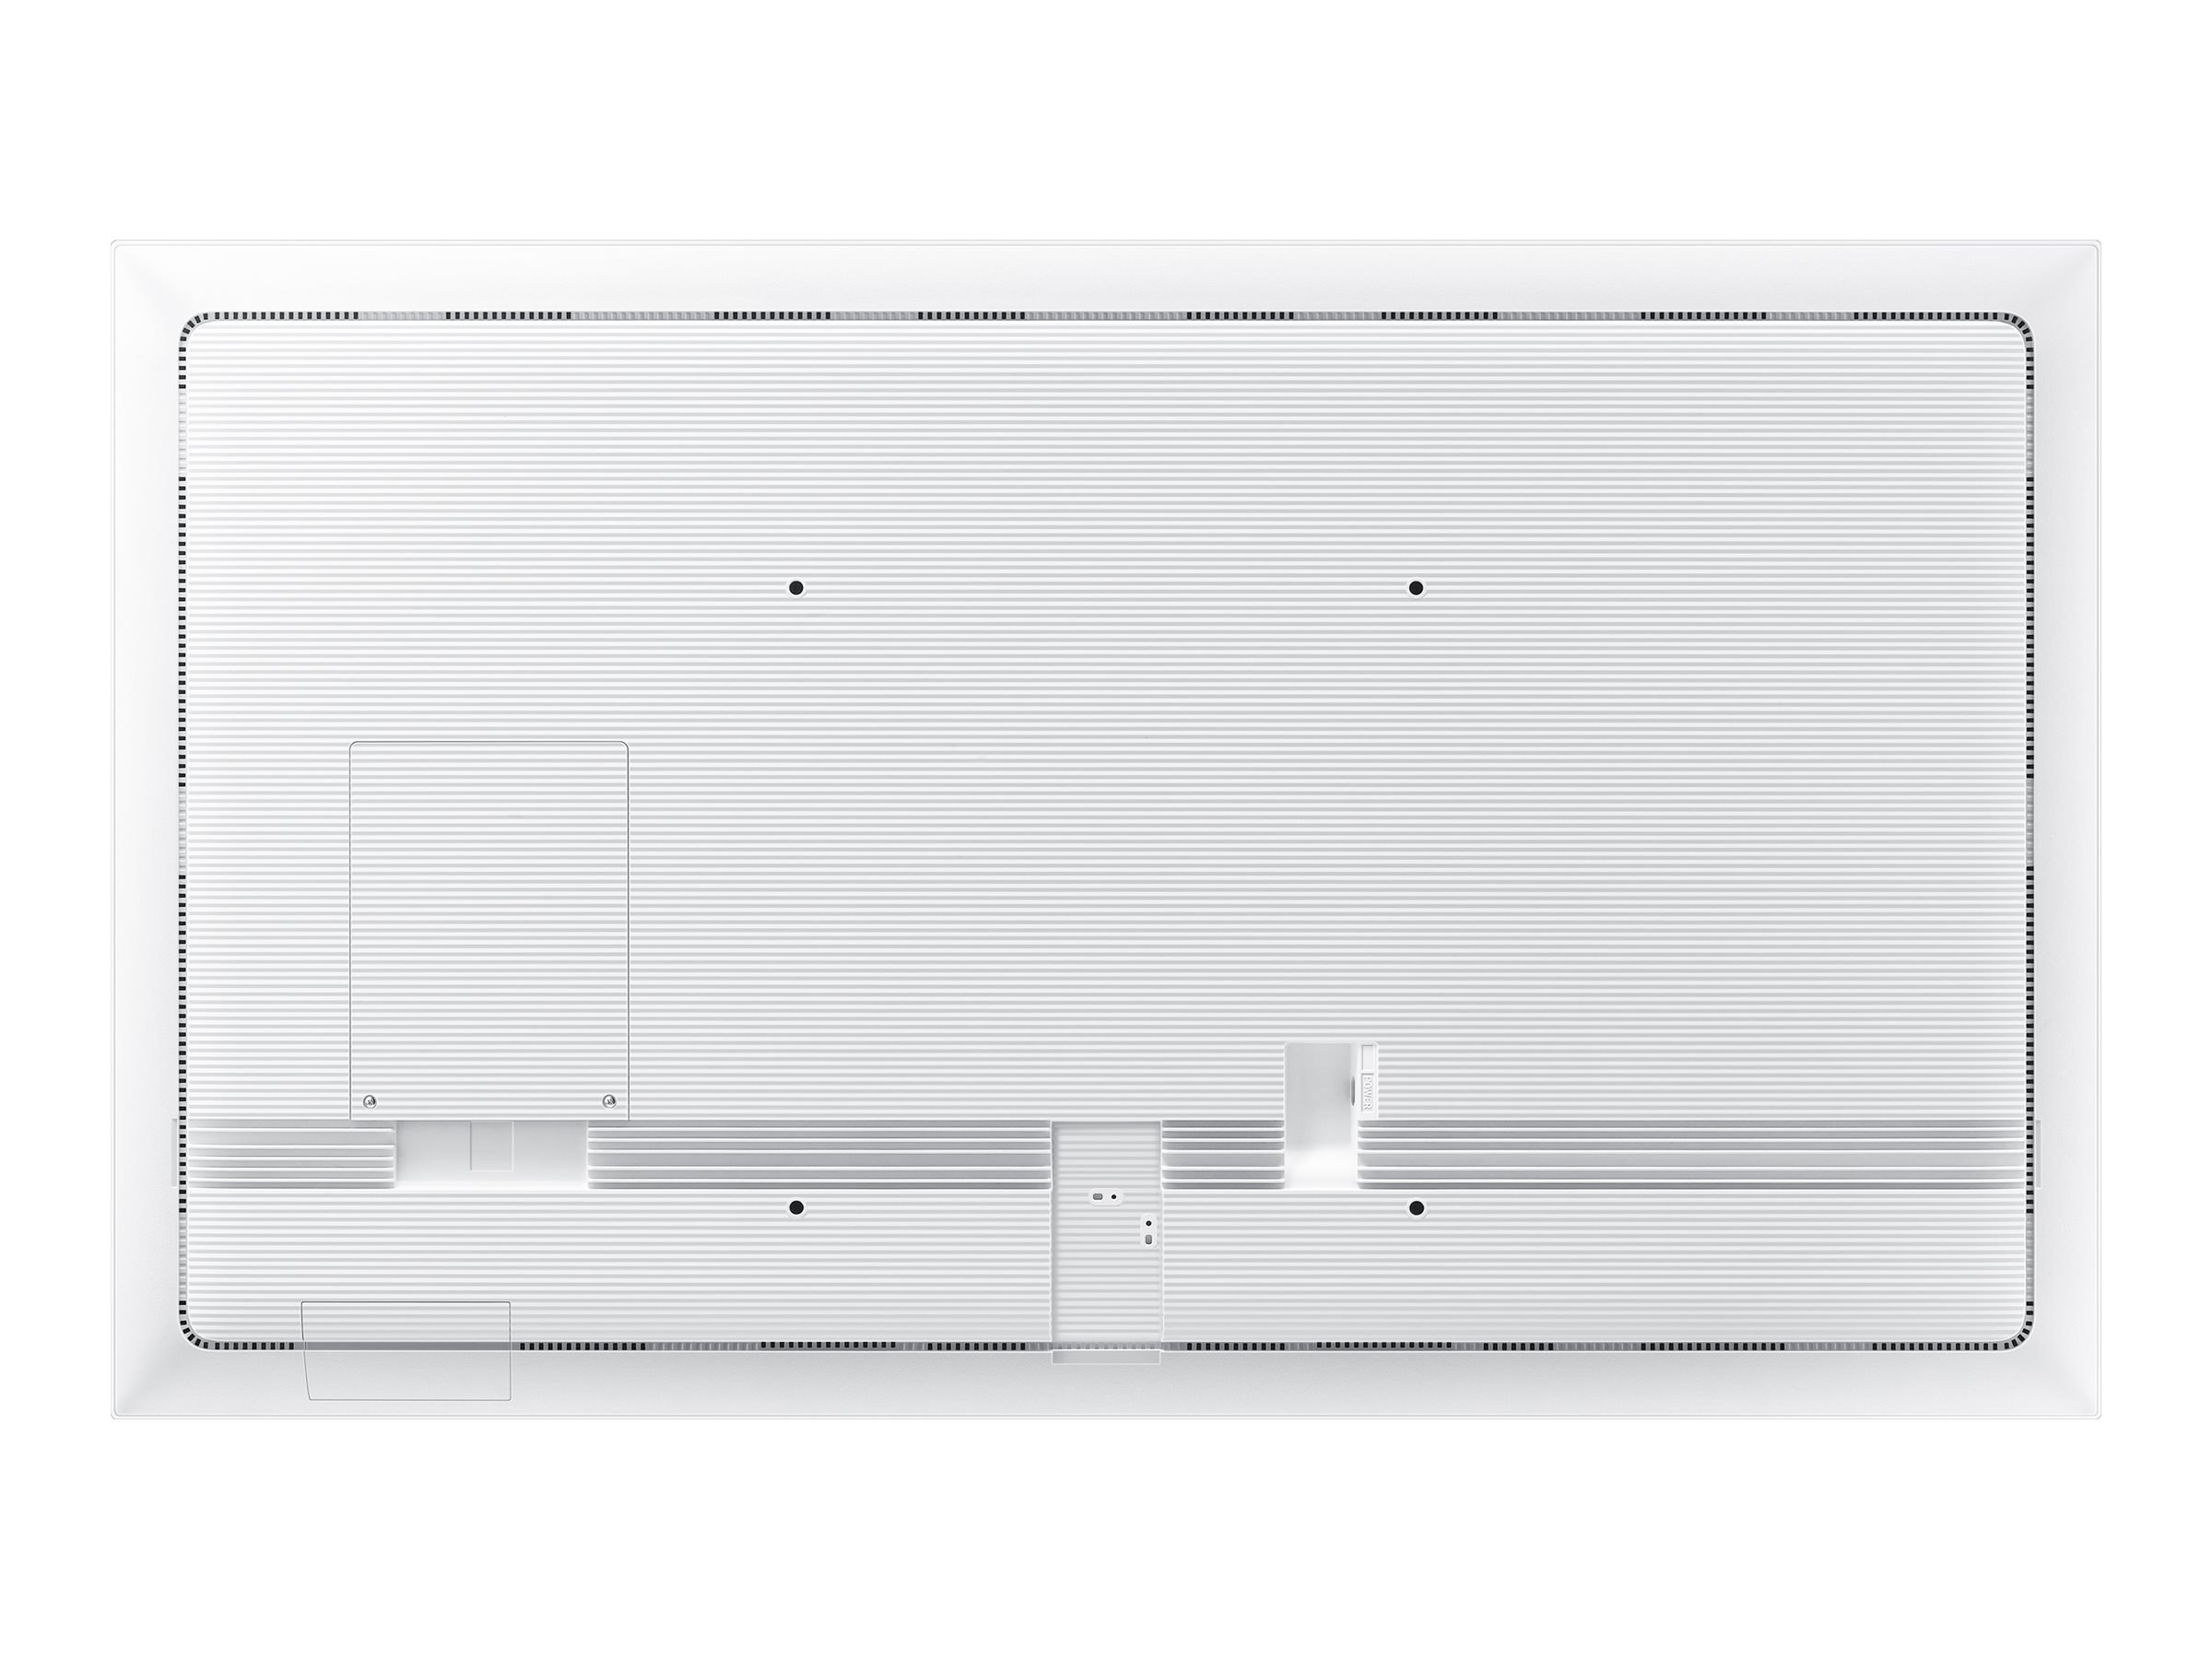 Samsung FLIP 2 WM55R | 55" (139cm) | Whiteboard